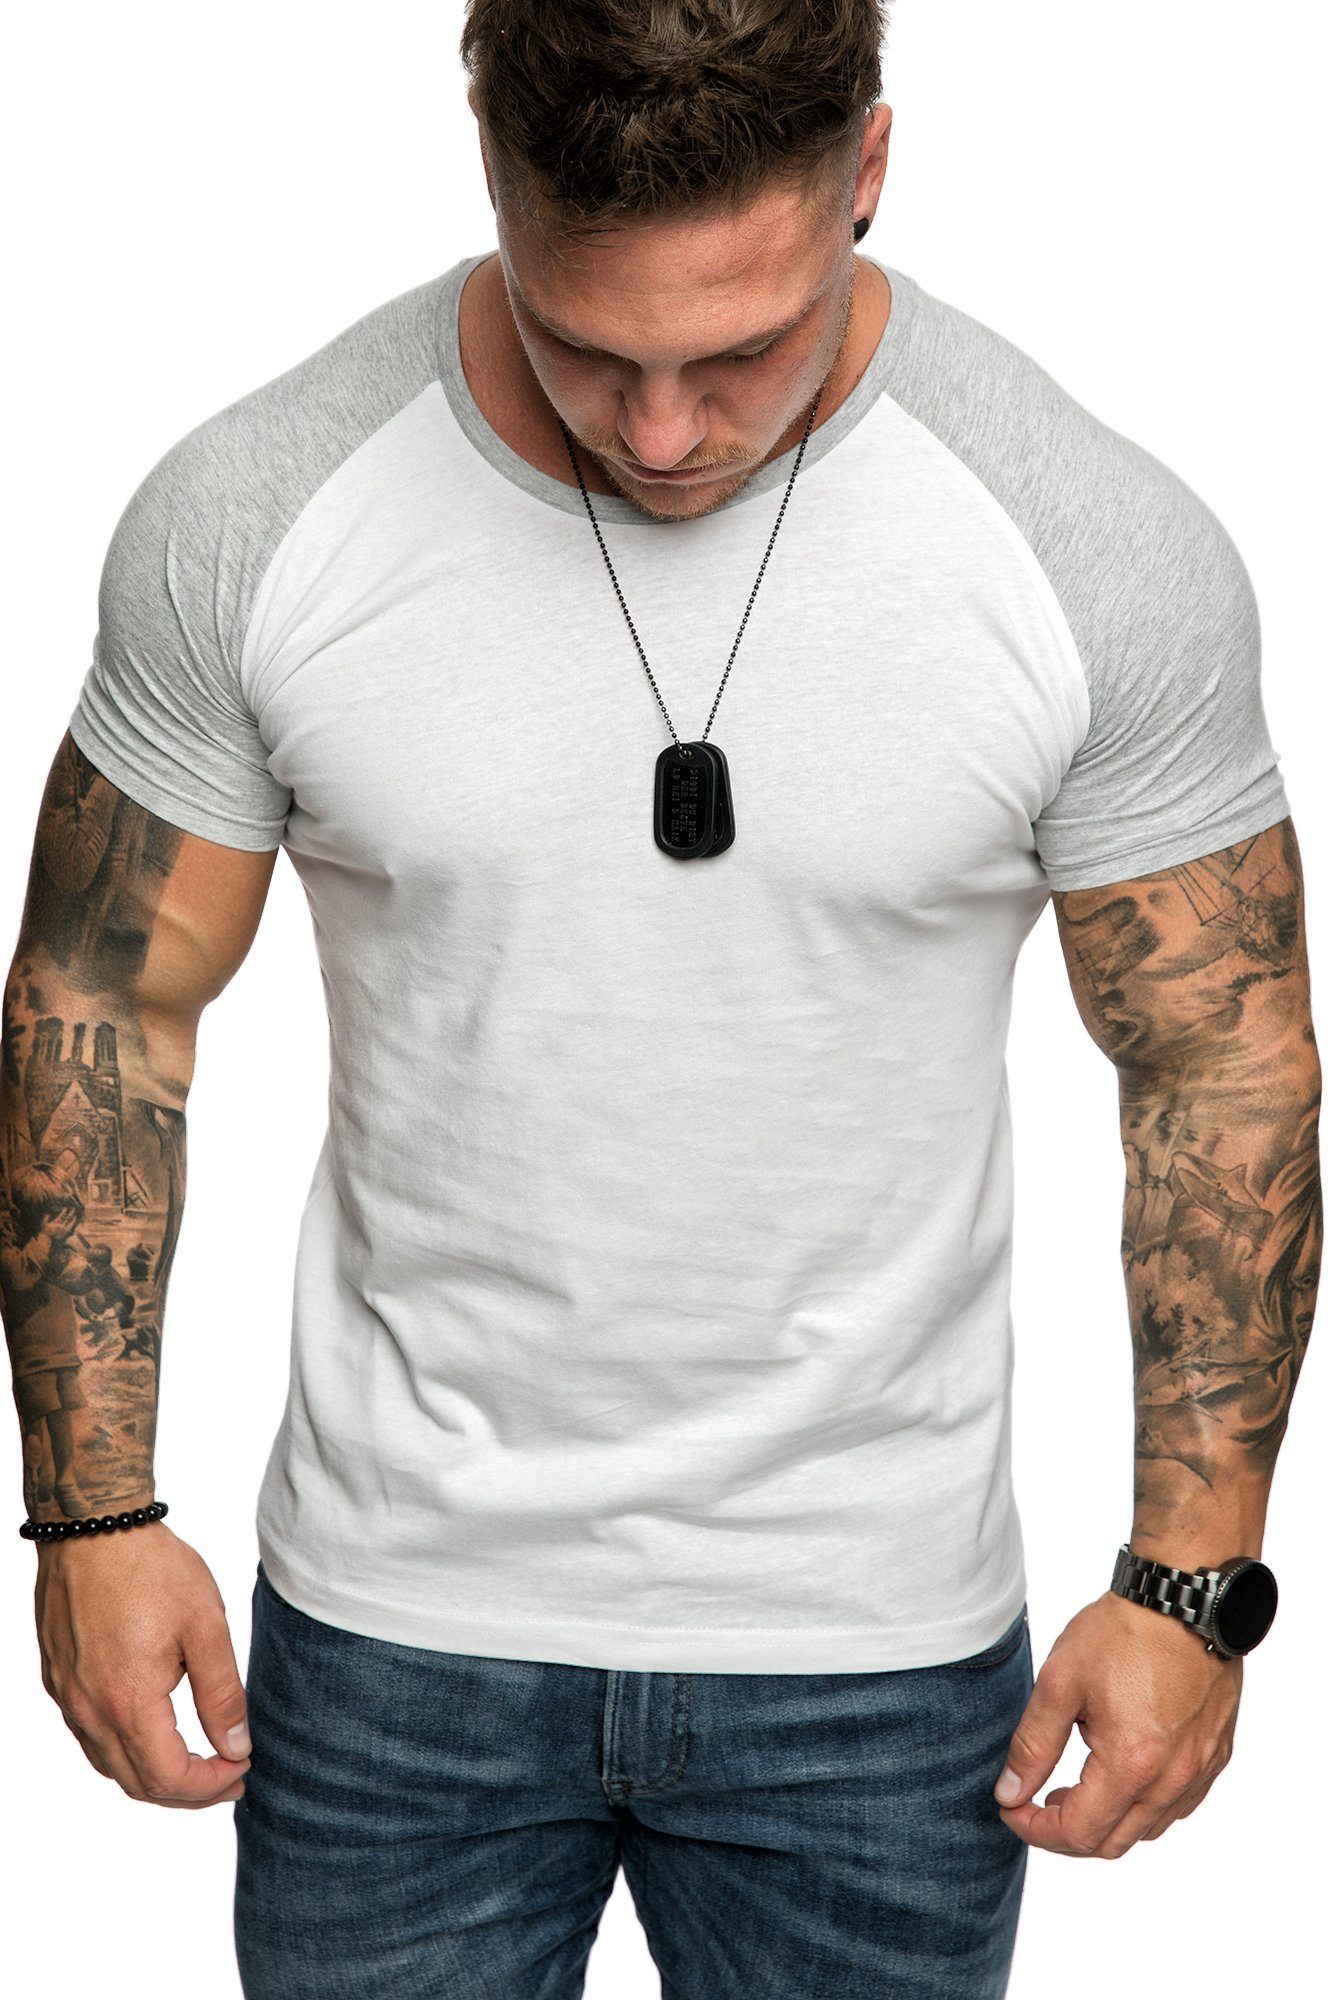 Weiß/Grau T-Shirt Raglan Shirt SALEM Rundhalsausschnitt Rundhalsausschnitt Amaci&Sons Herren Basic mit Basic T-Shirt Raglan mit